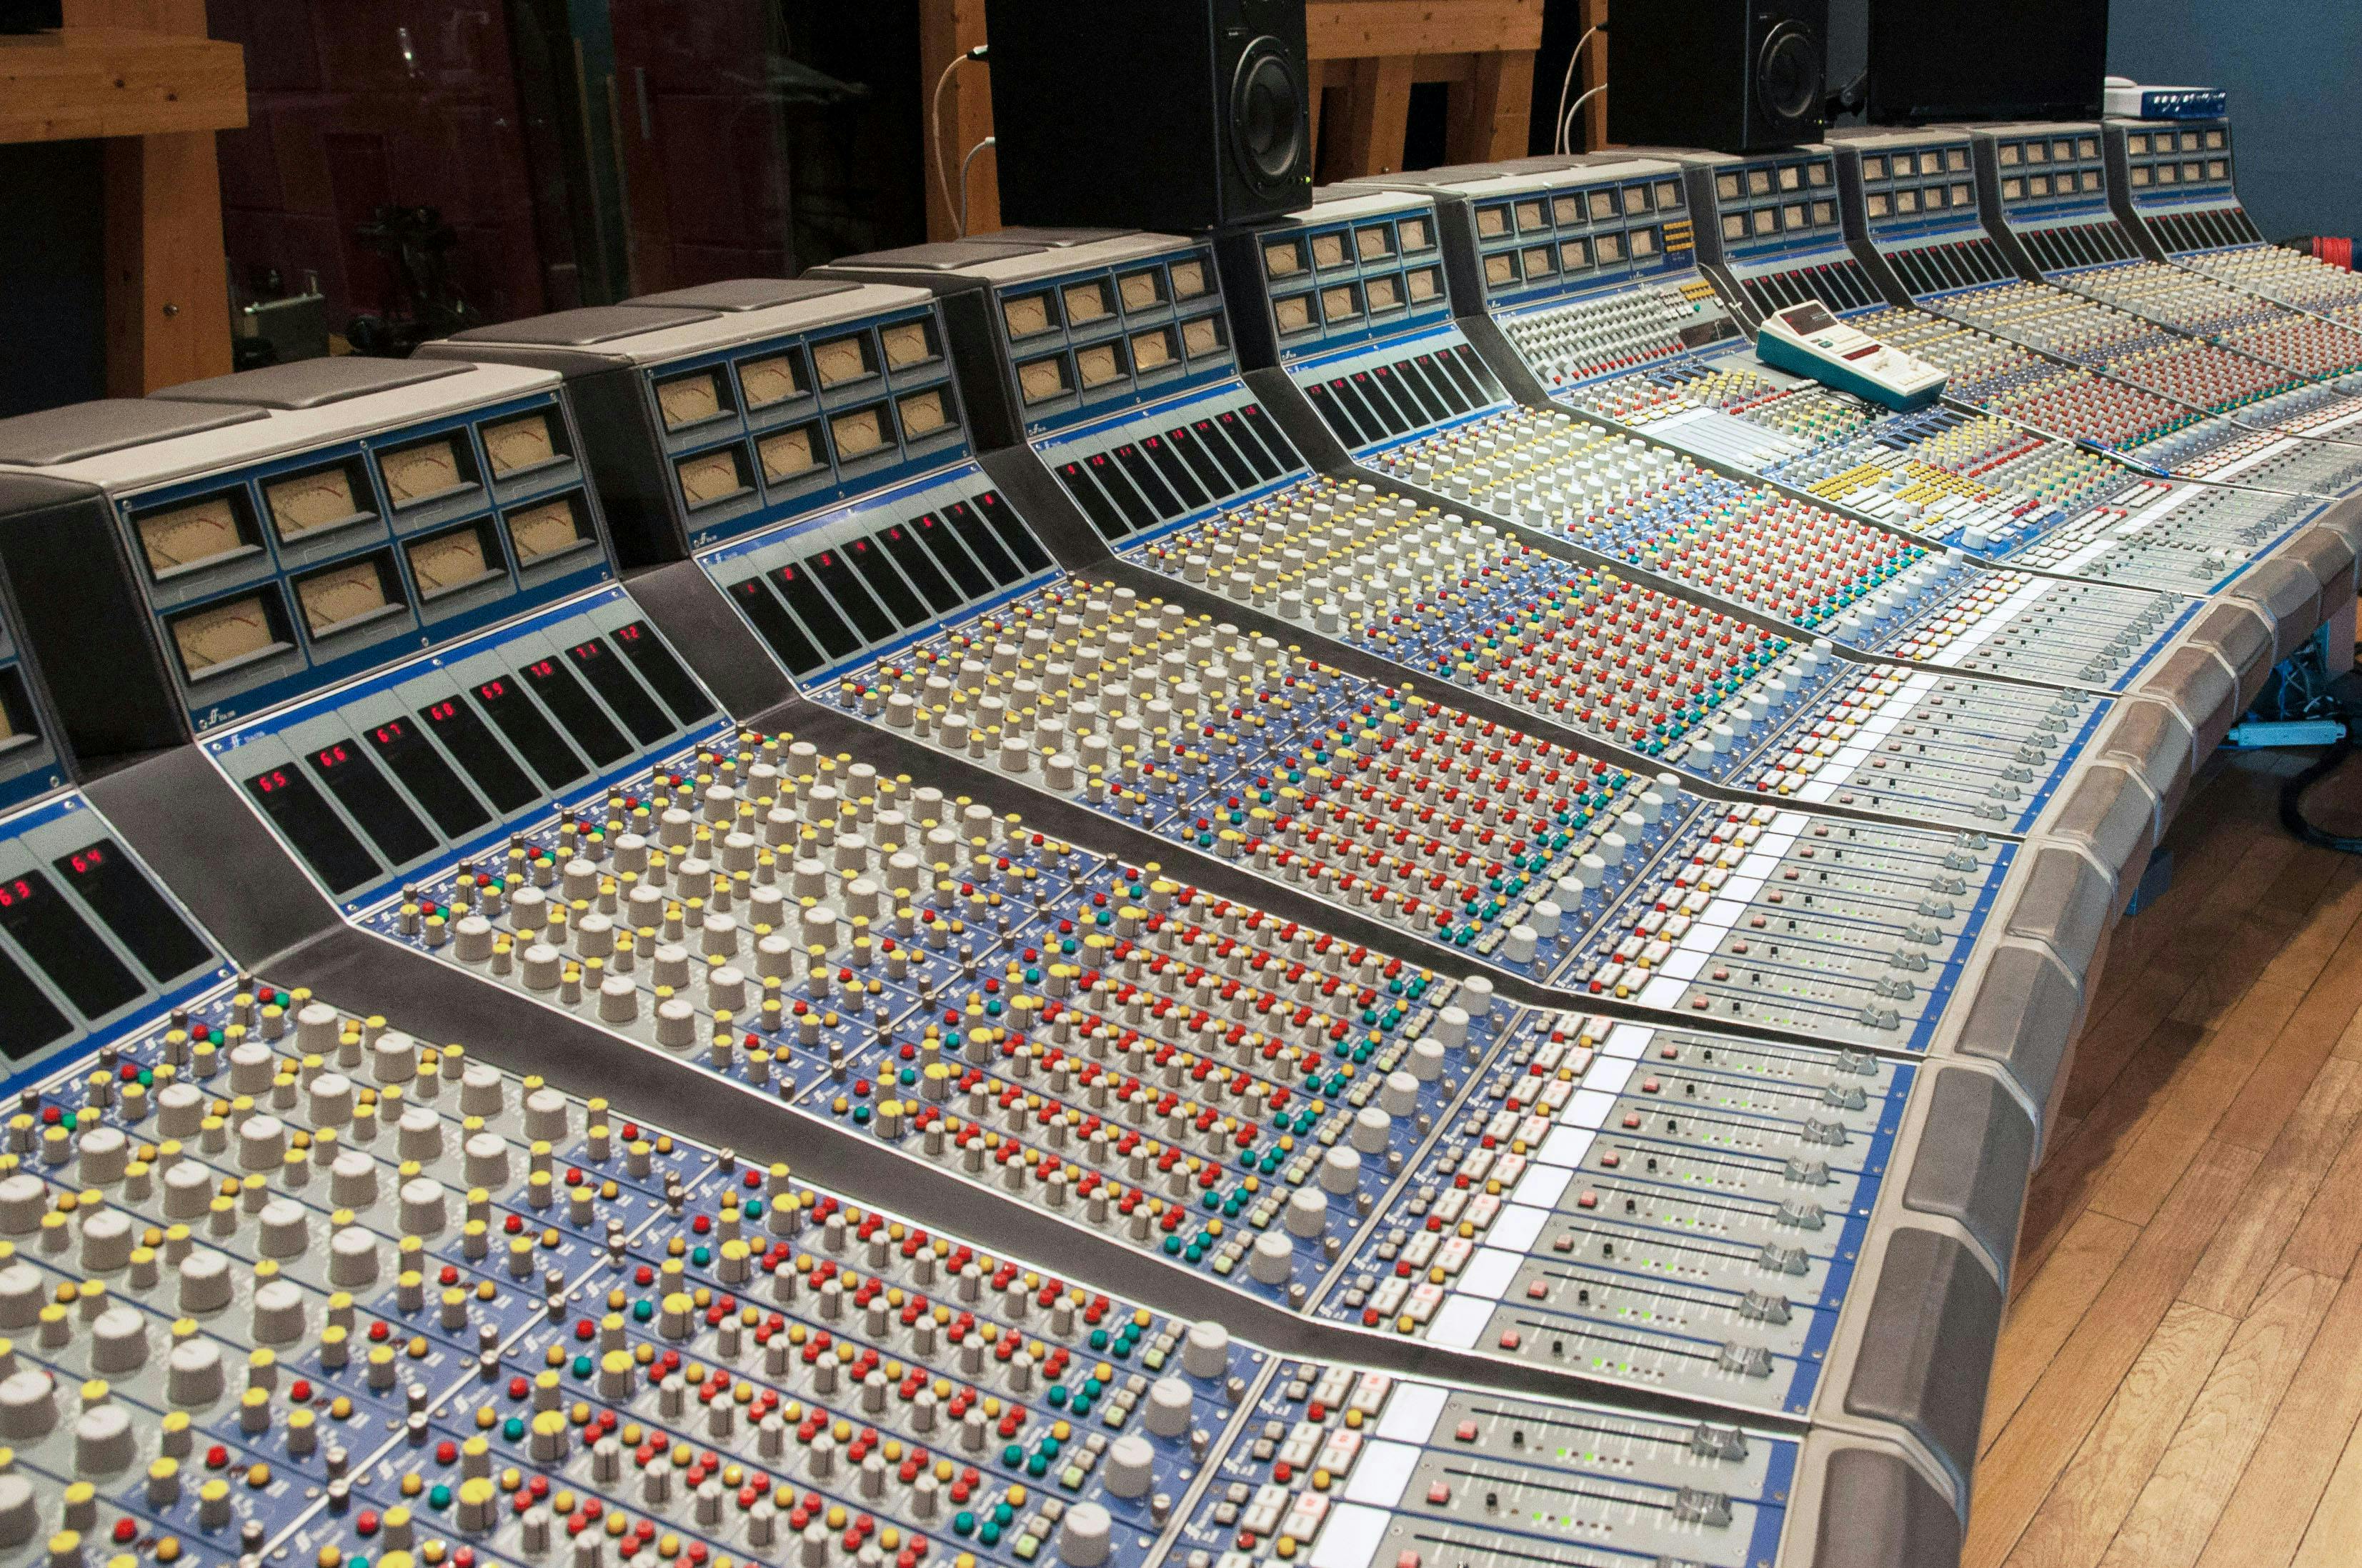 Consoles in a recording studio.